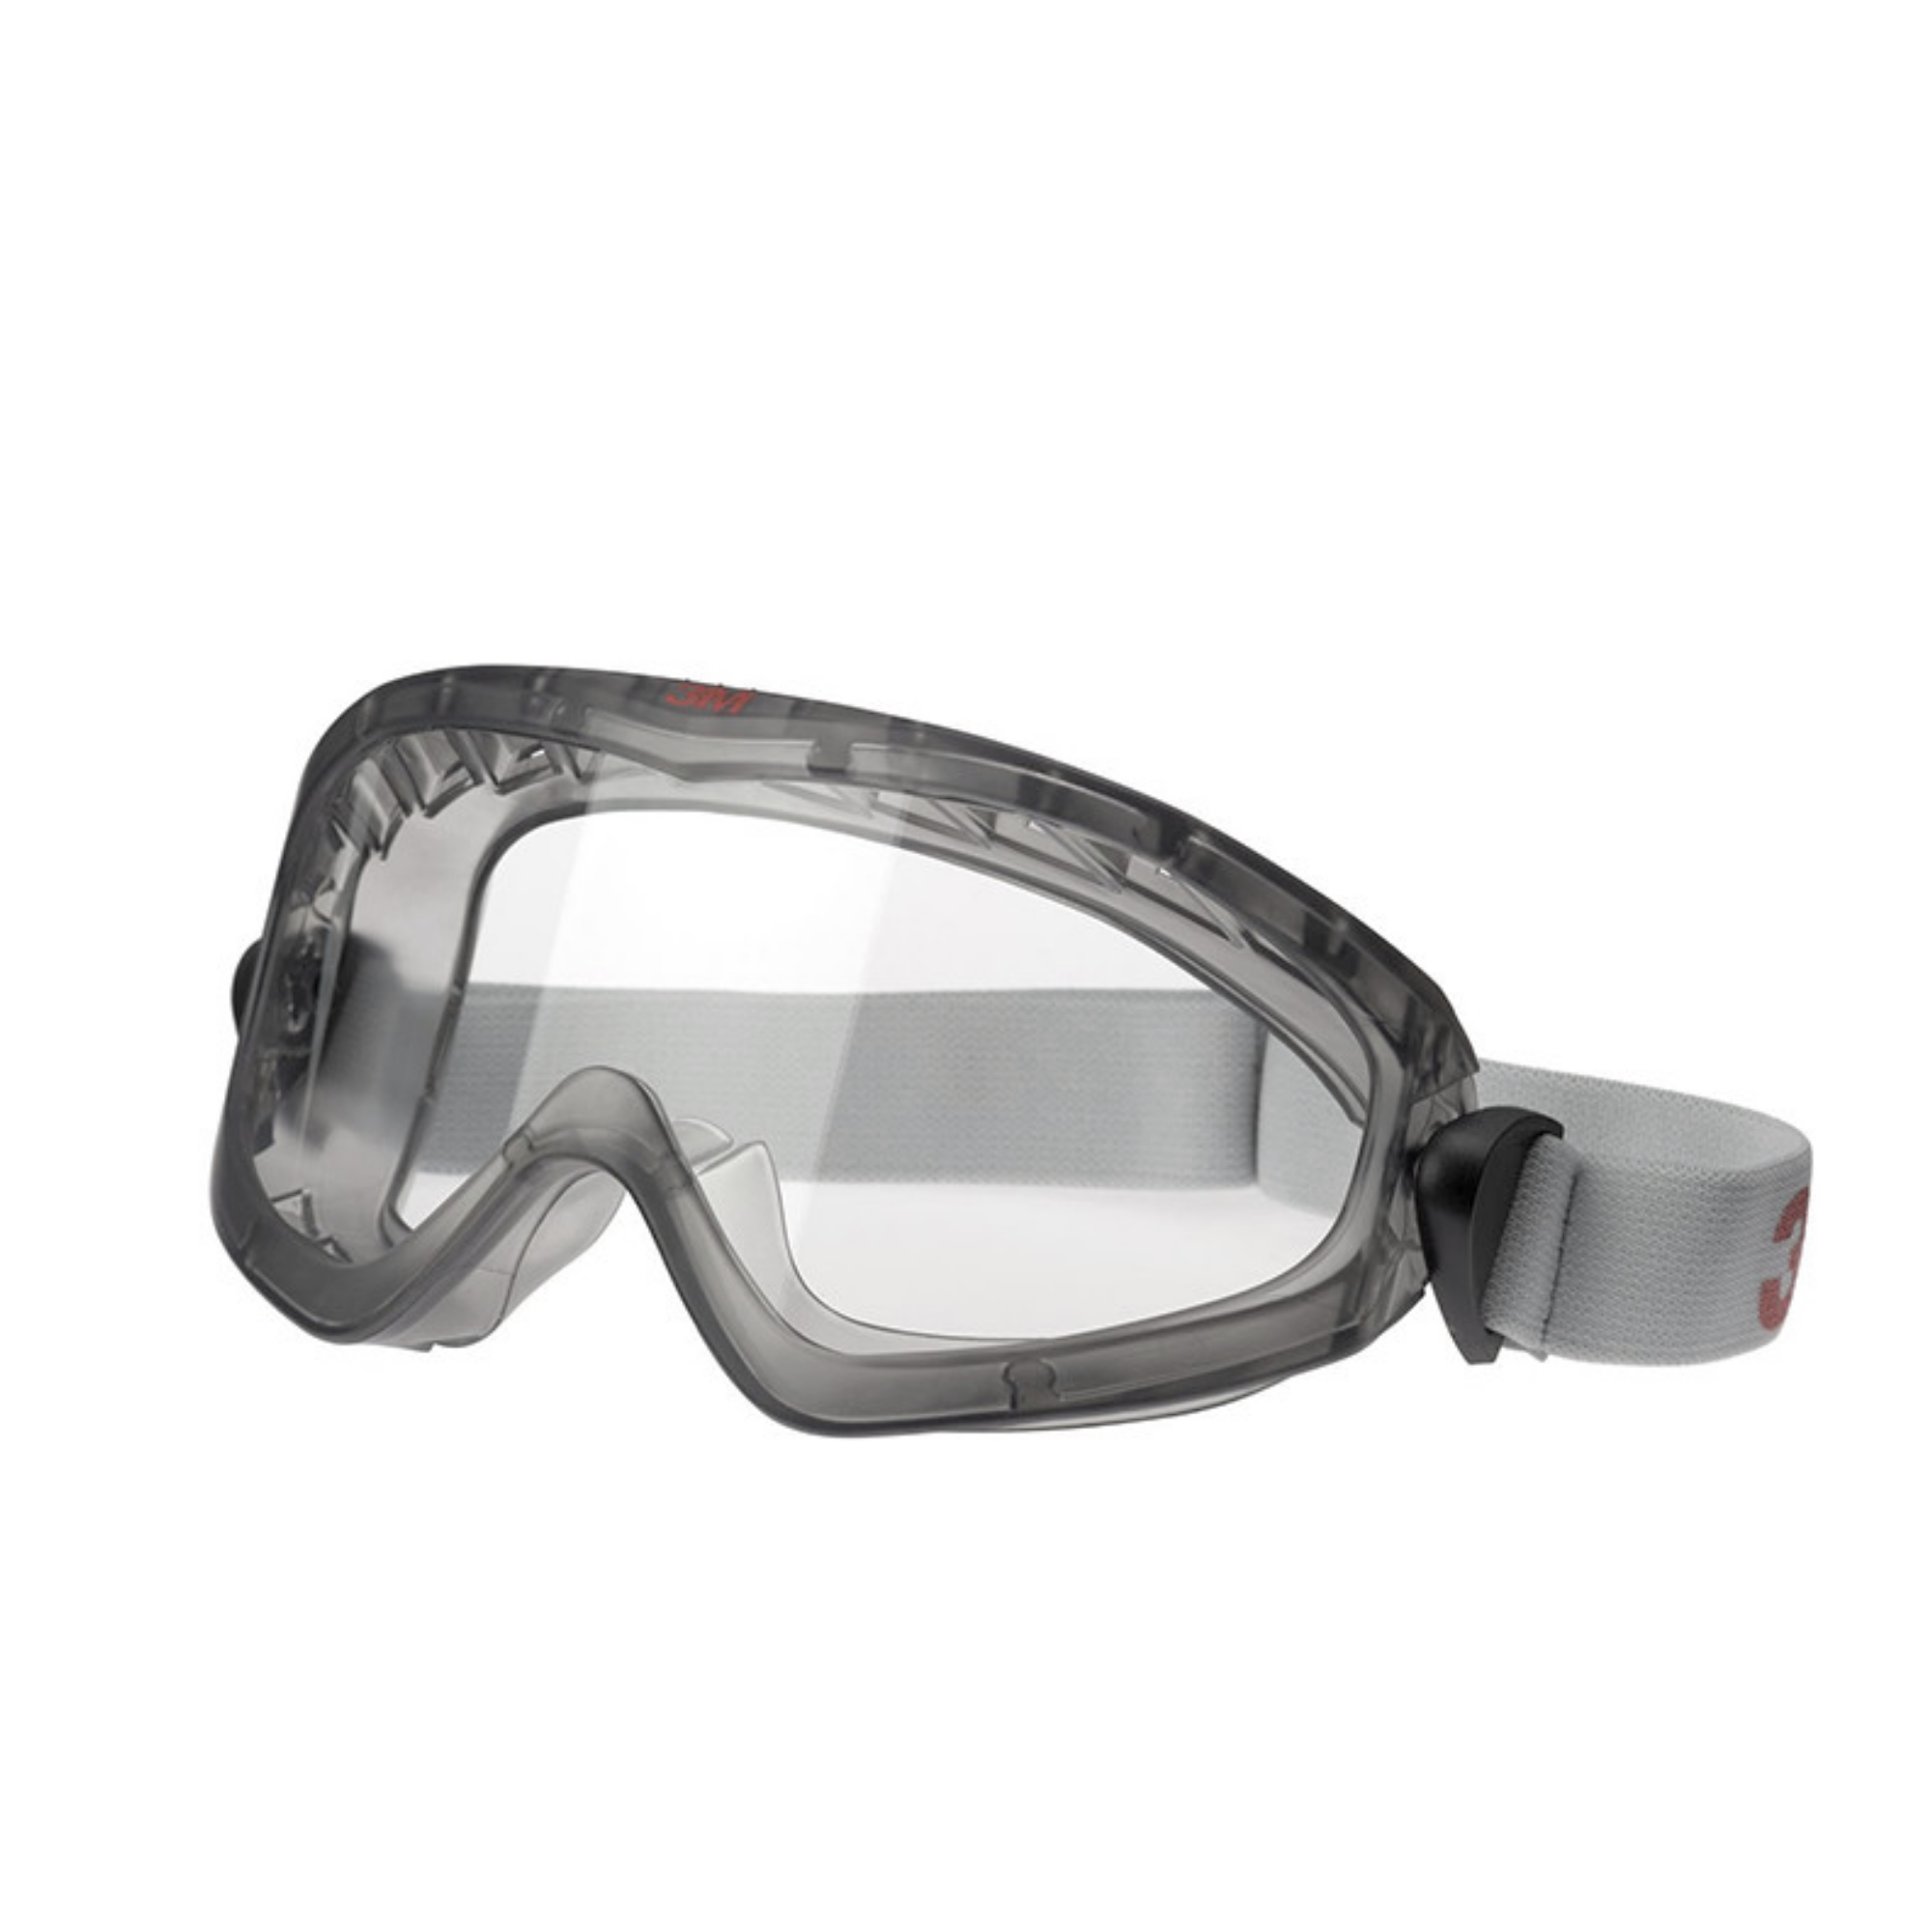 Masque de sécurité 3M - Protection oculaire